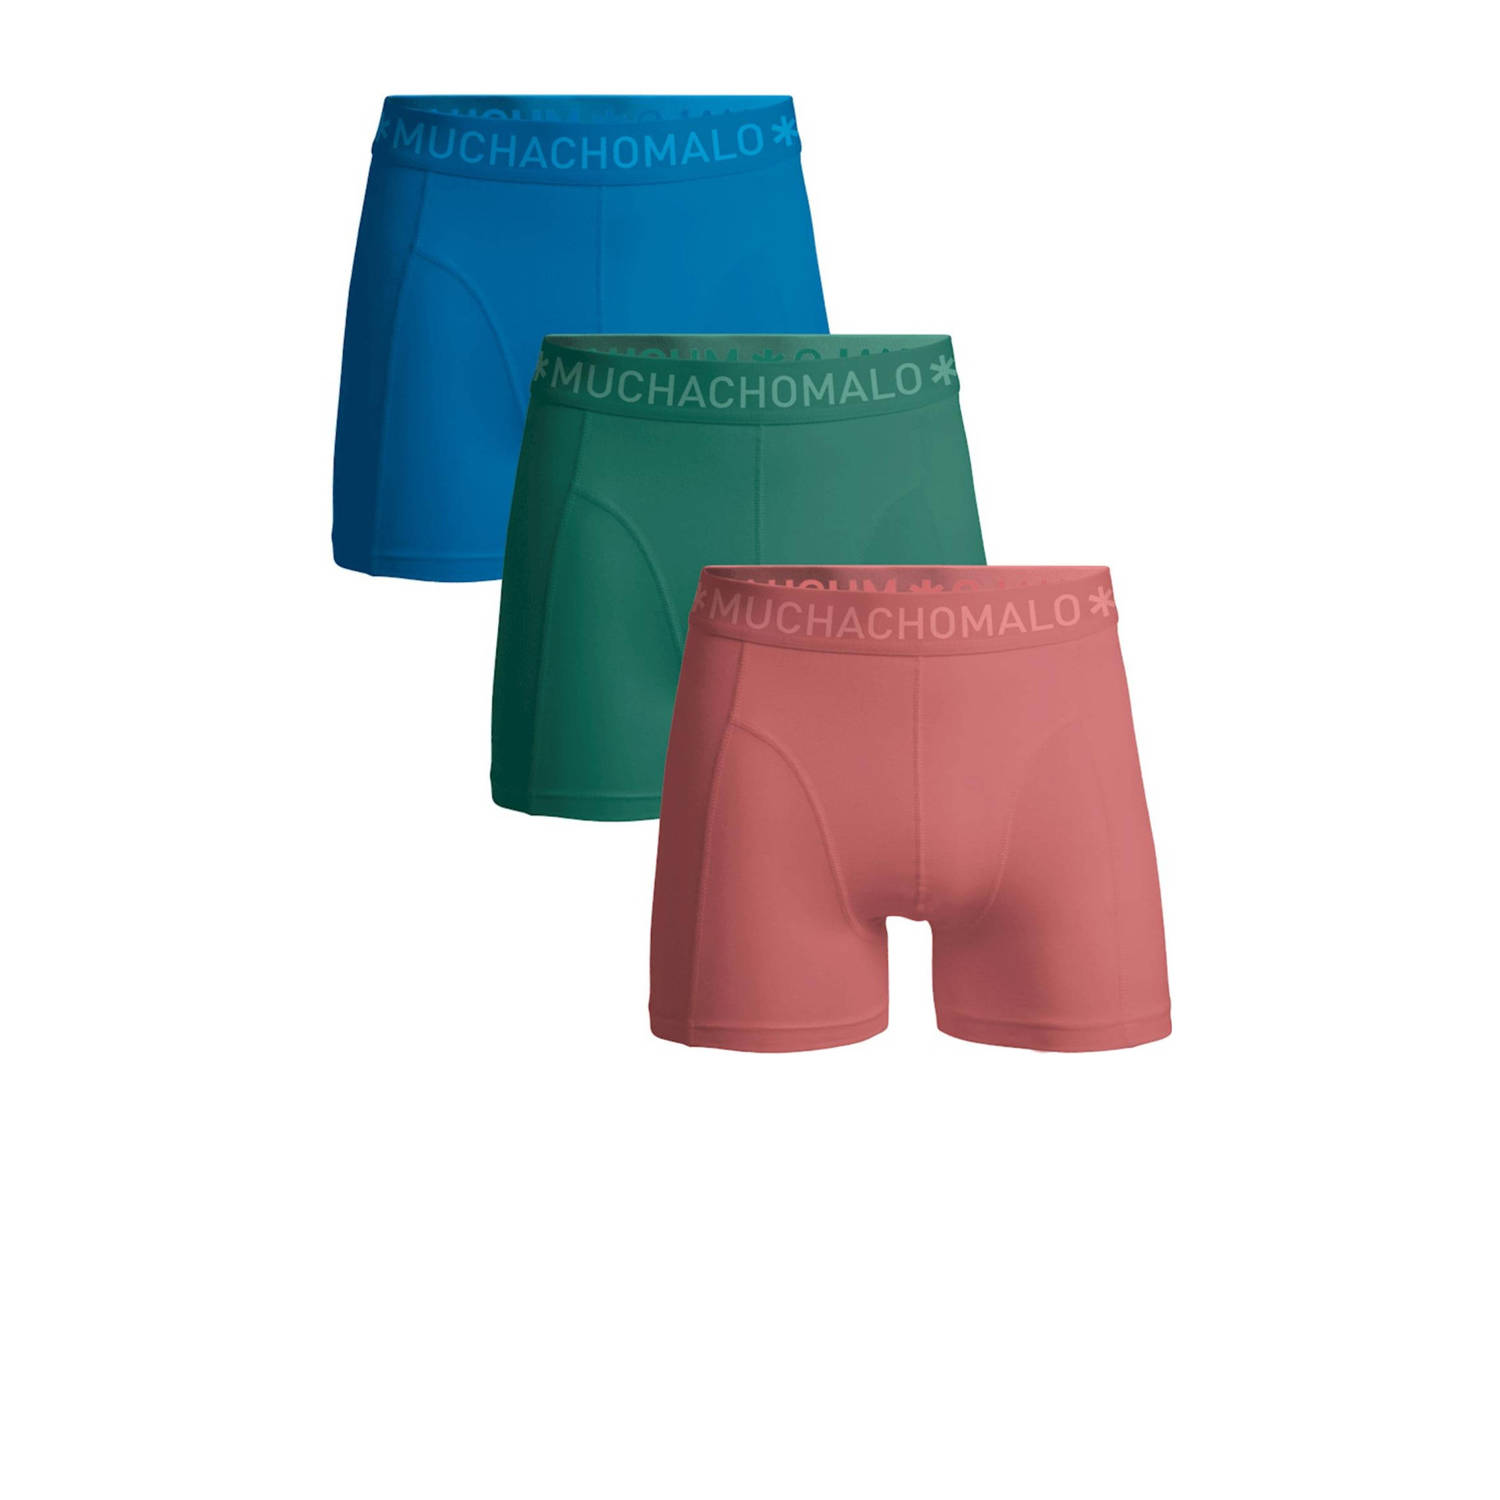 Muchachomalo boxershort SOLID- set van 3 blauw groen roze Multi Jongens Katoen 134 140